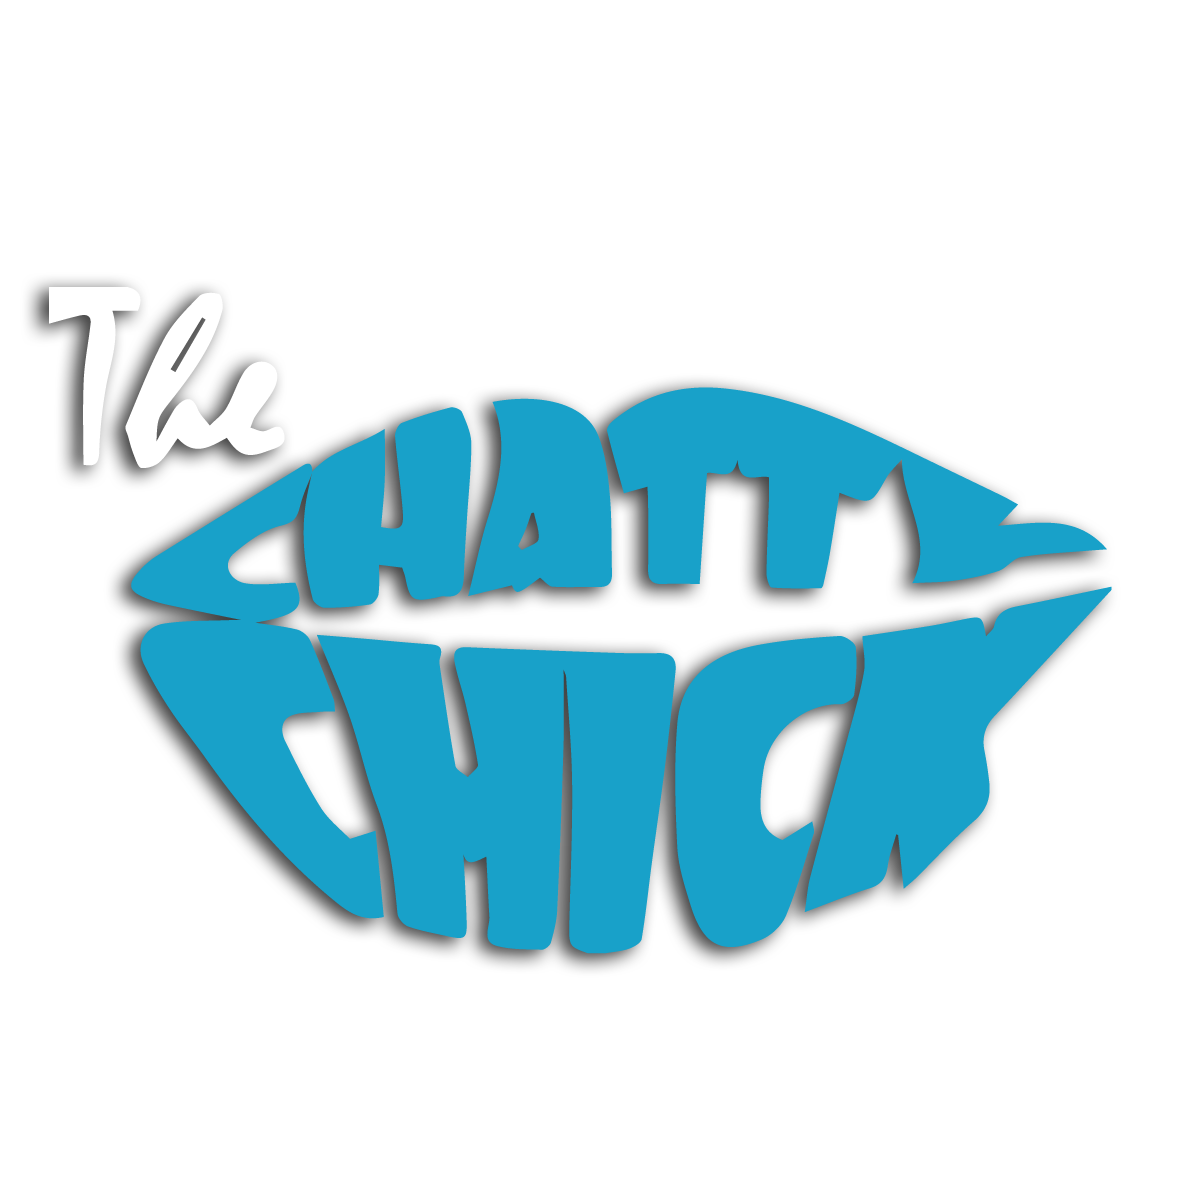 TheChattyChick